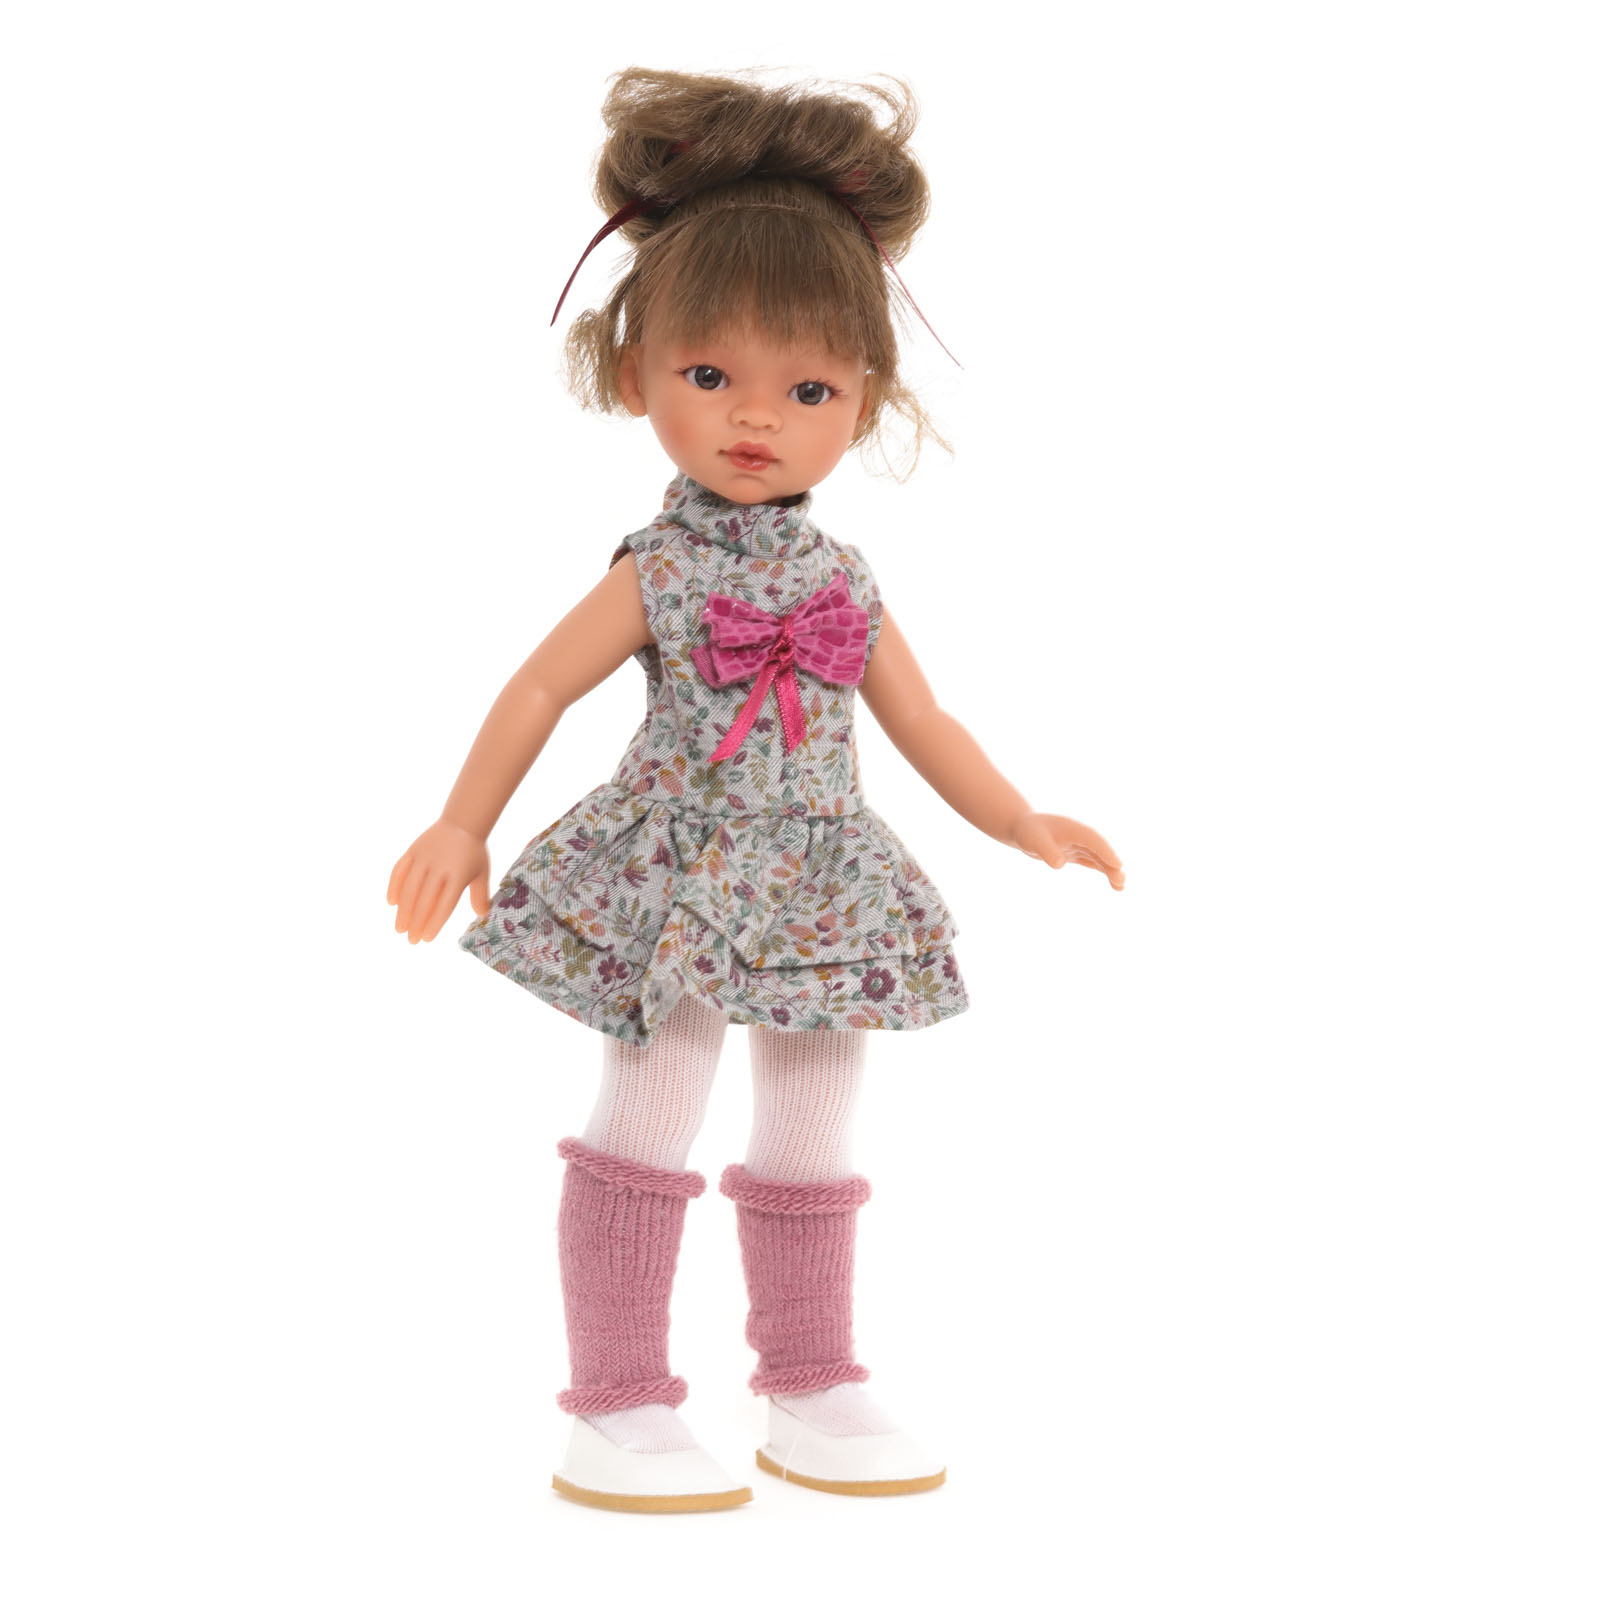 Кукла девочка Antonio Juan Ноа модный образ, 33 см, виниловая 25195 кукла испанская antonio juan белла в розовых наушниках 45 см виниловая 28326